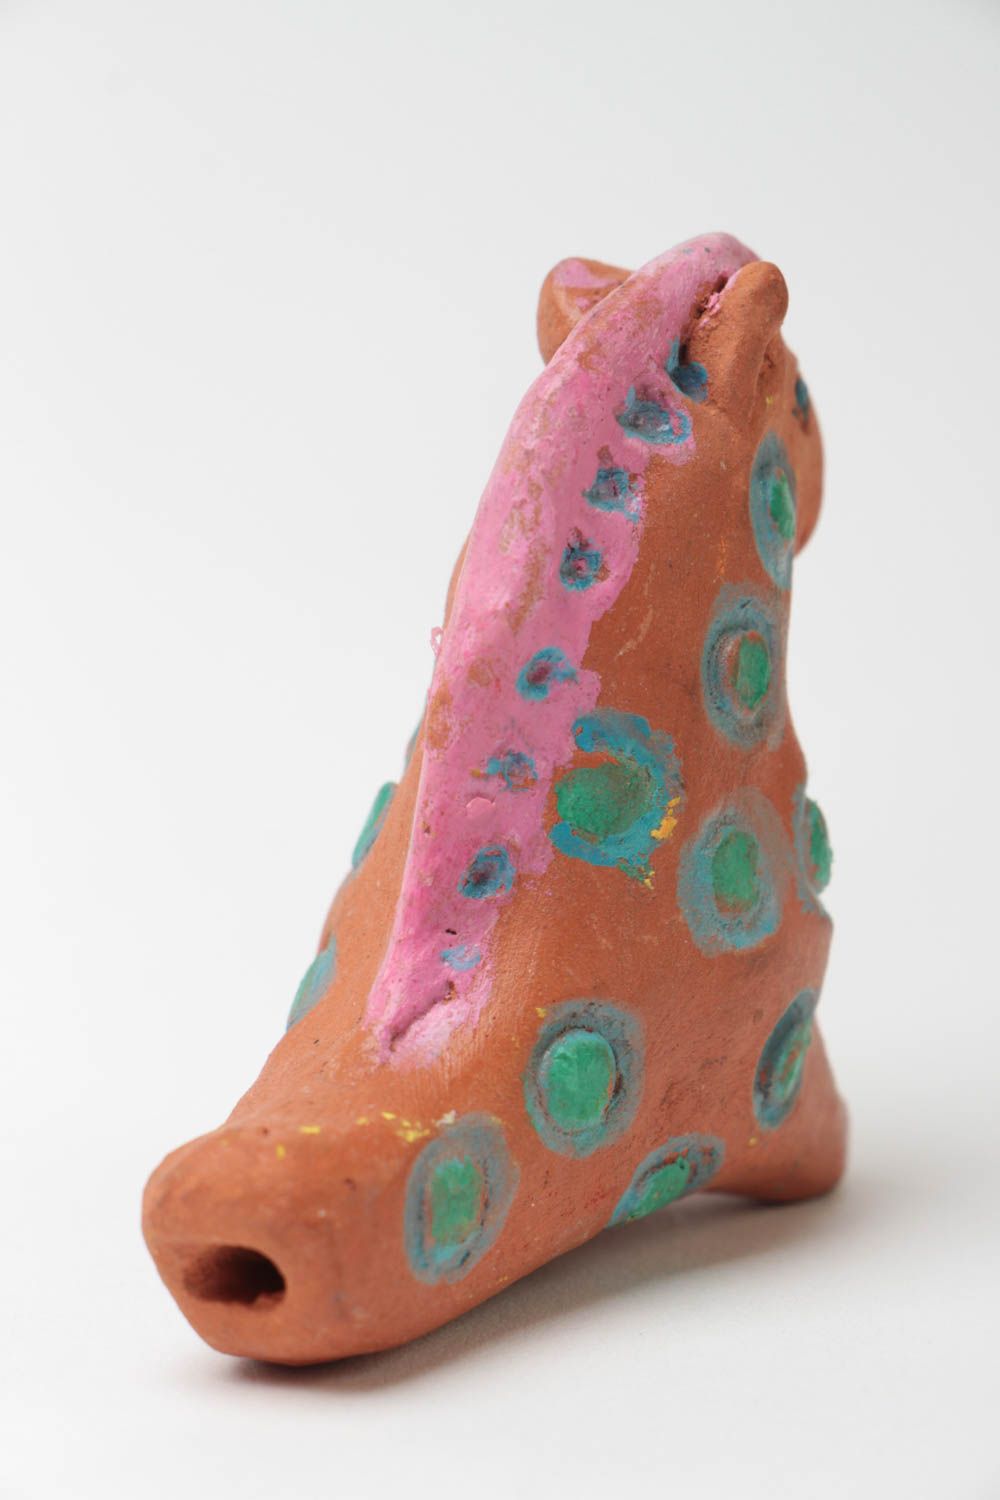 Глиняная свистулька лошадка маленькая с росписью красками игрушка для детей фото 3